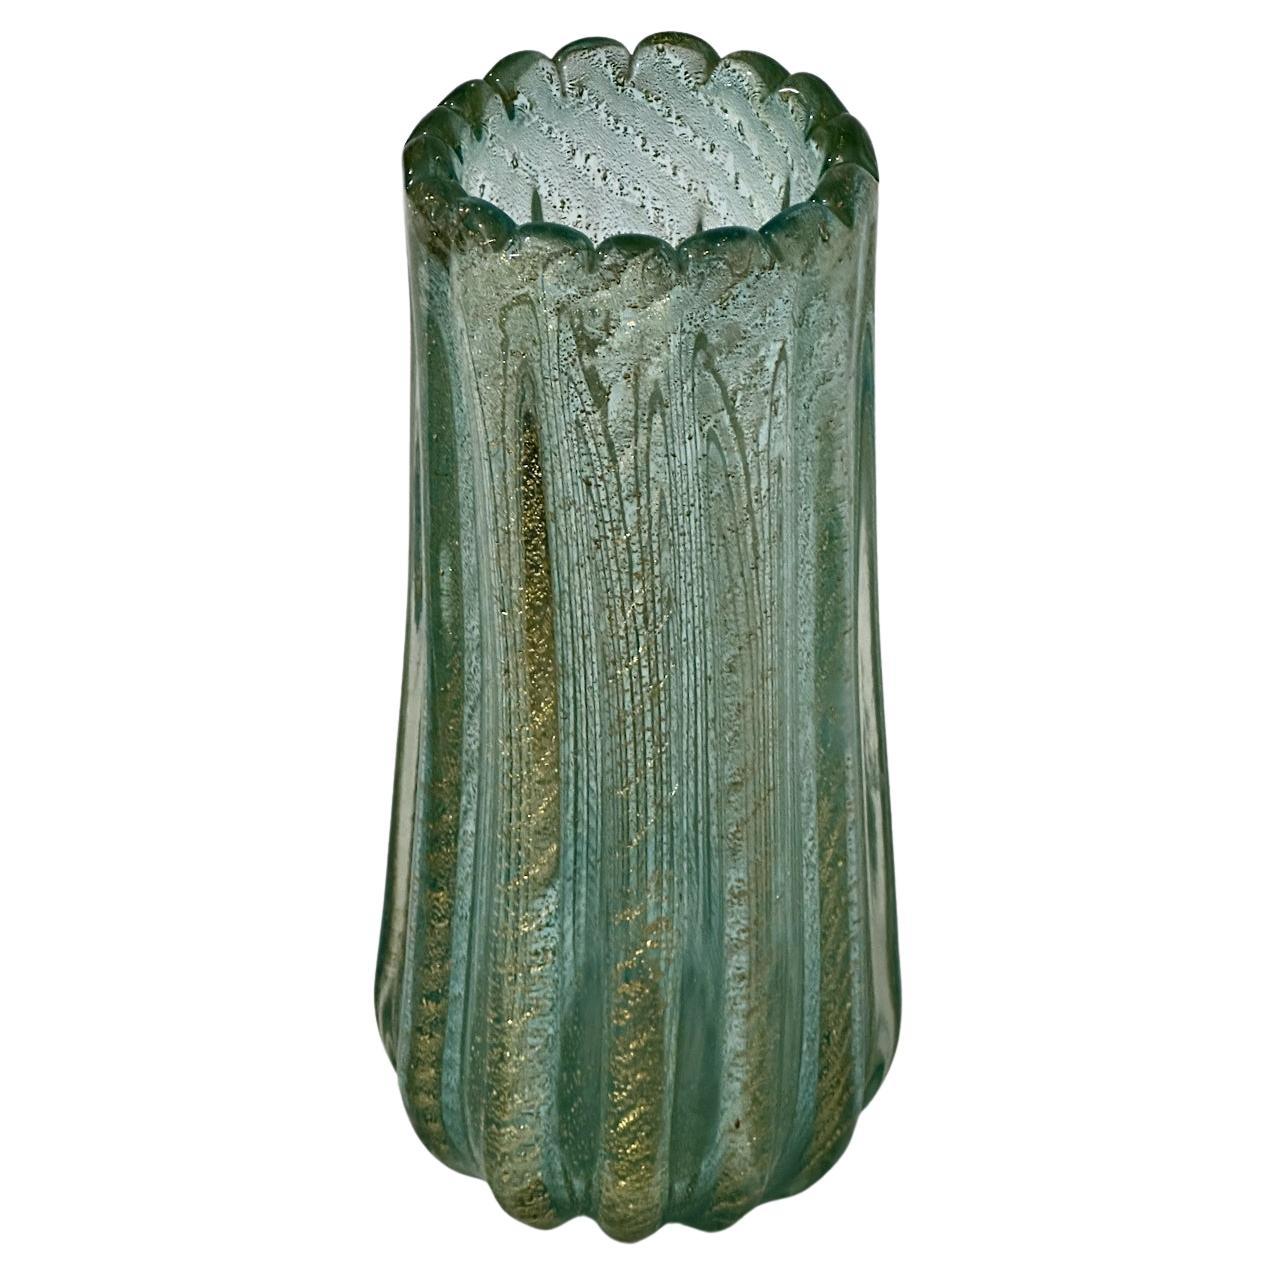 Ercole Barovier & Toso Cordonato d'Or Vase aus grünem und goldenem Murano Glas, CIRCA 1950. Mit einer handgefertigten, vertikal gerippten Form, gekräuselten Rand und mundgeblasen mit verschmolzenen 24 kt Gold 